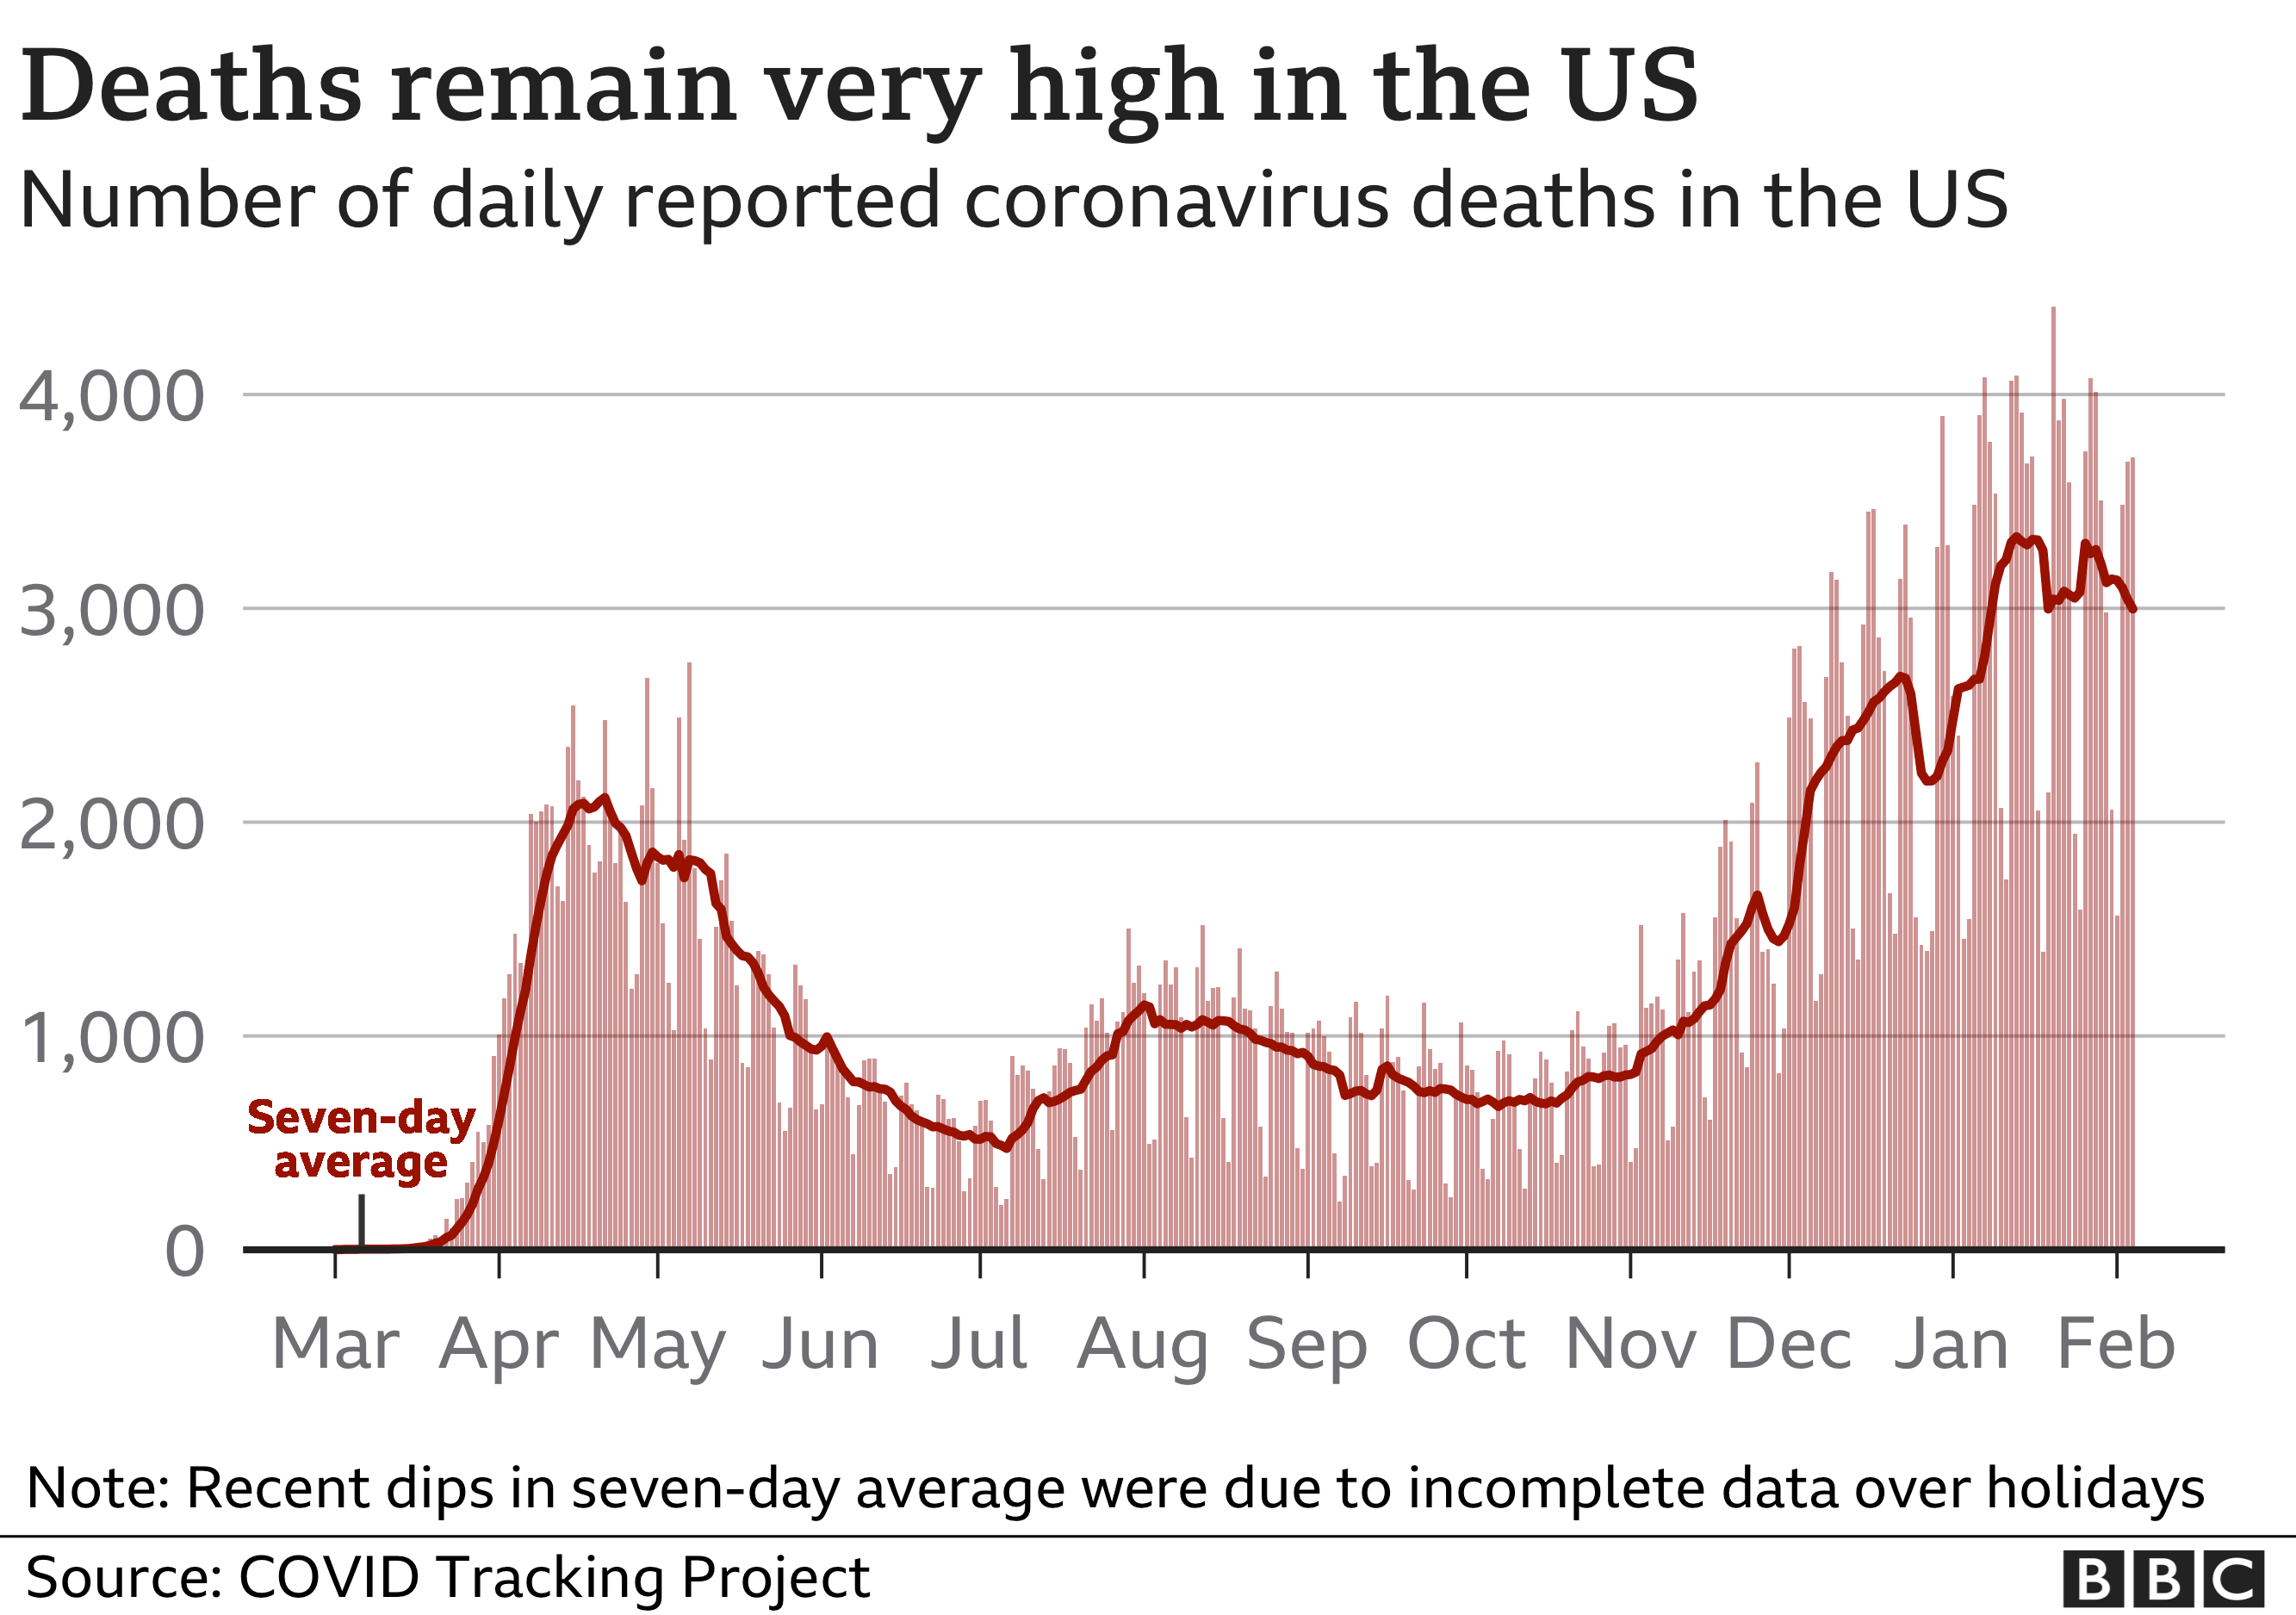 График, показывающий количество ежедневных смертей от коронавируса в США, остается очень высоким